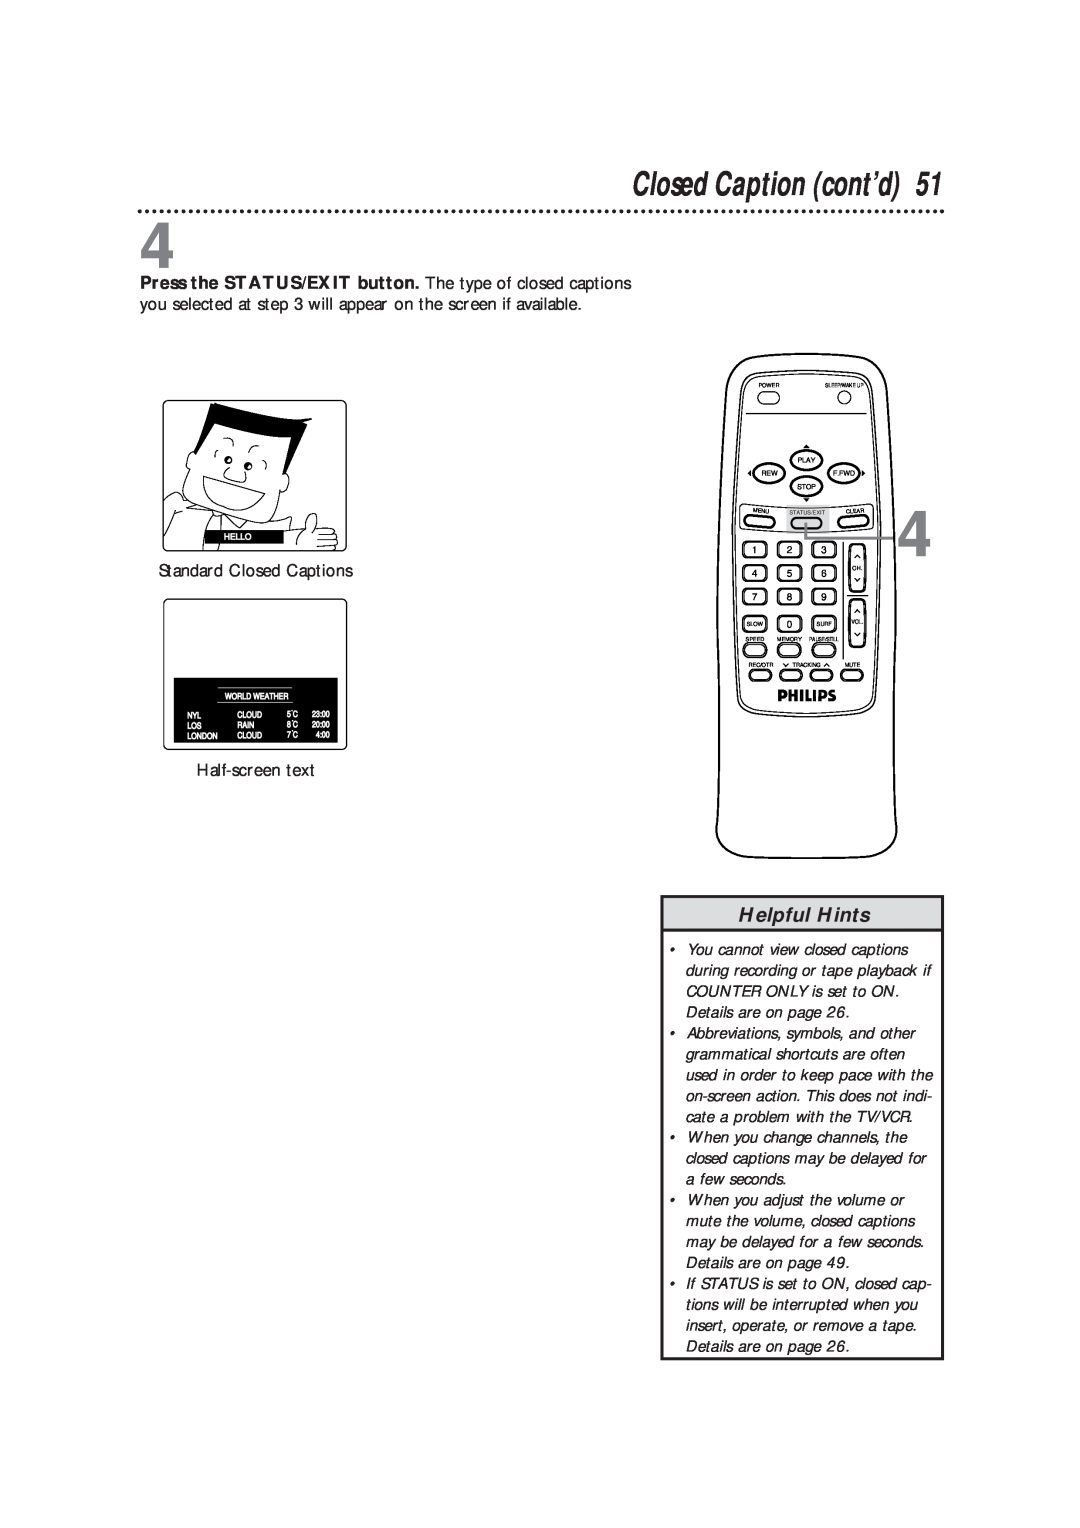 Magnavox CCB193AT owner manual Closed Caption cont’d, Helpful Hints, Standard Closed Captions, Half-screen text 